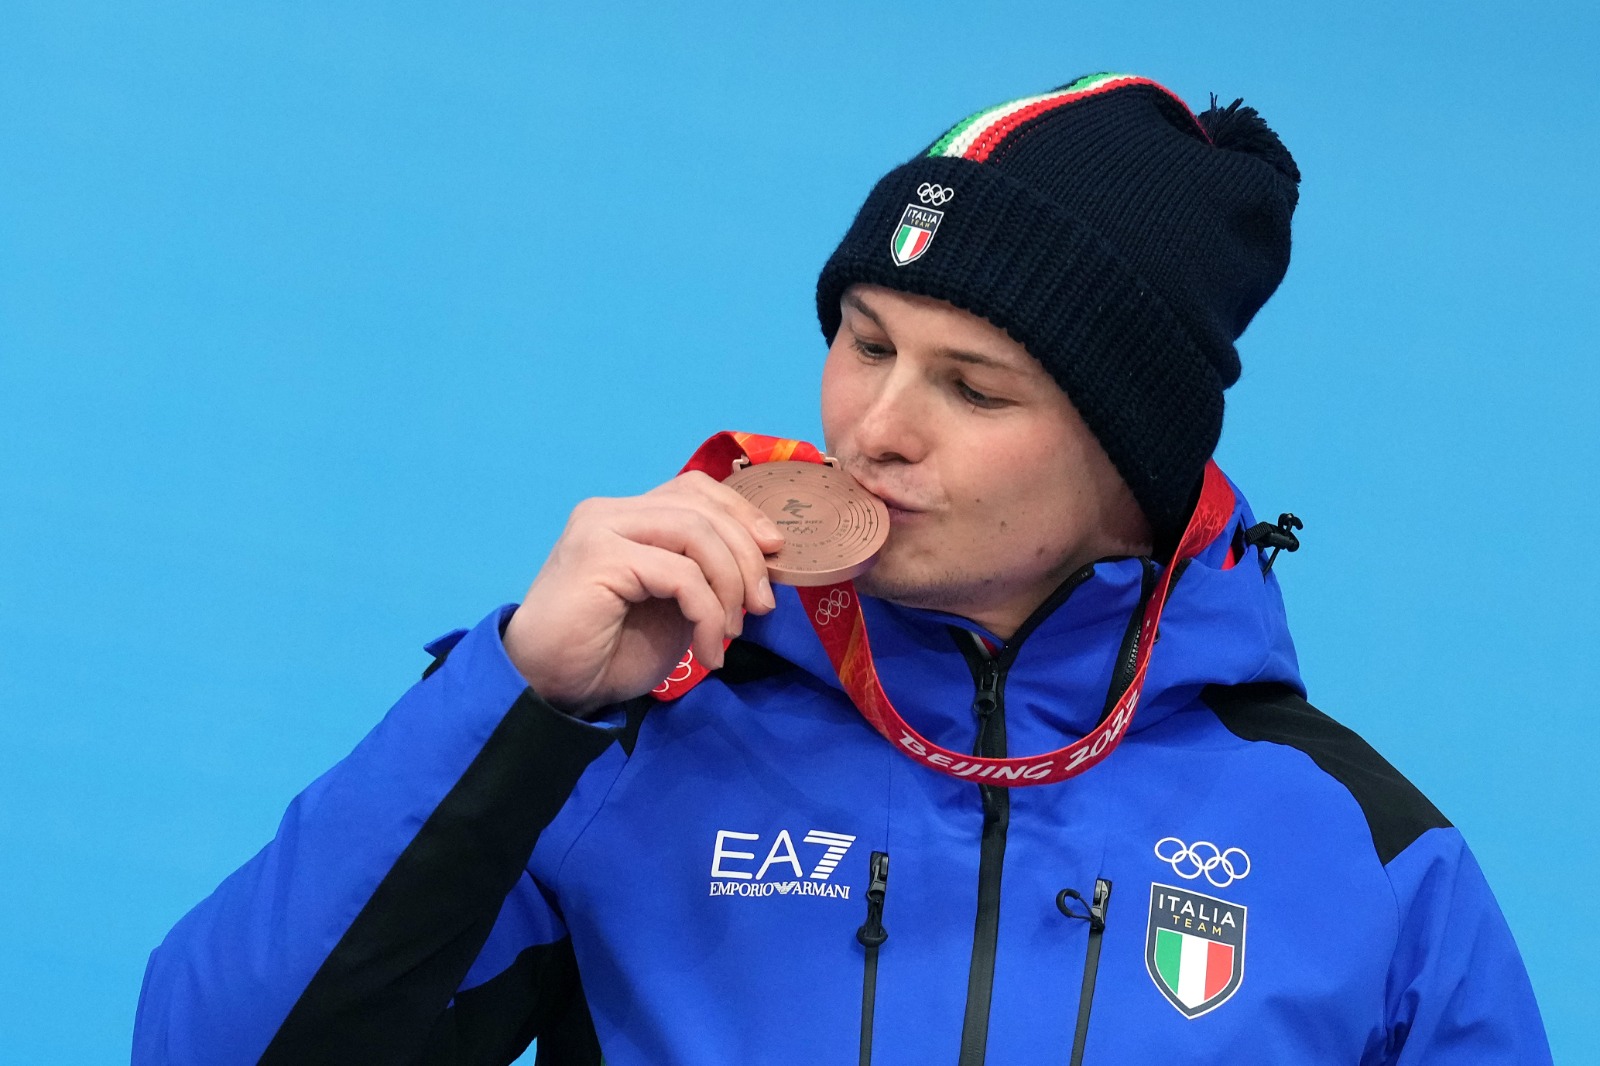 Bronzo per Dominik Fischnaller nello slittino, terza medaglia Italia